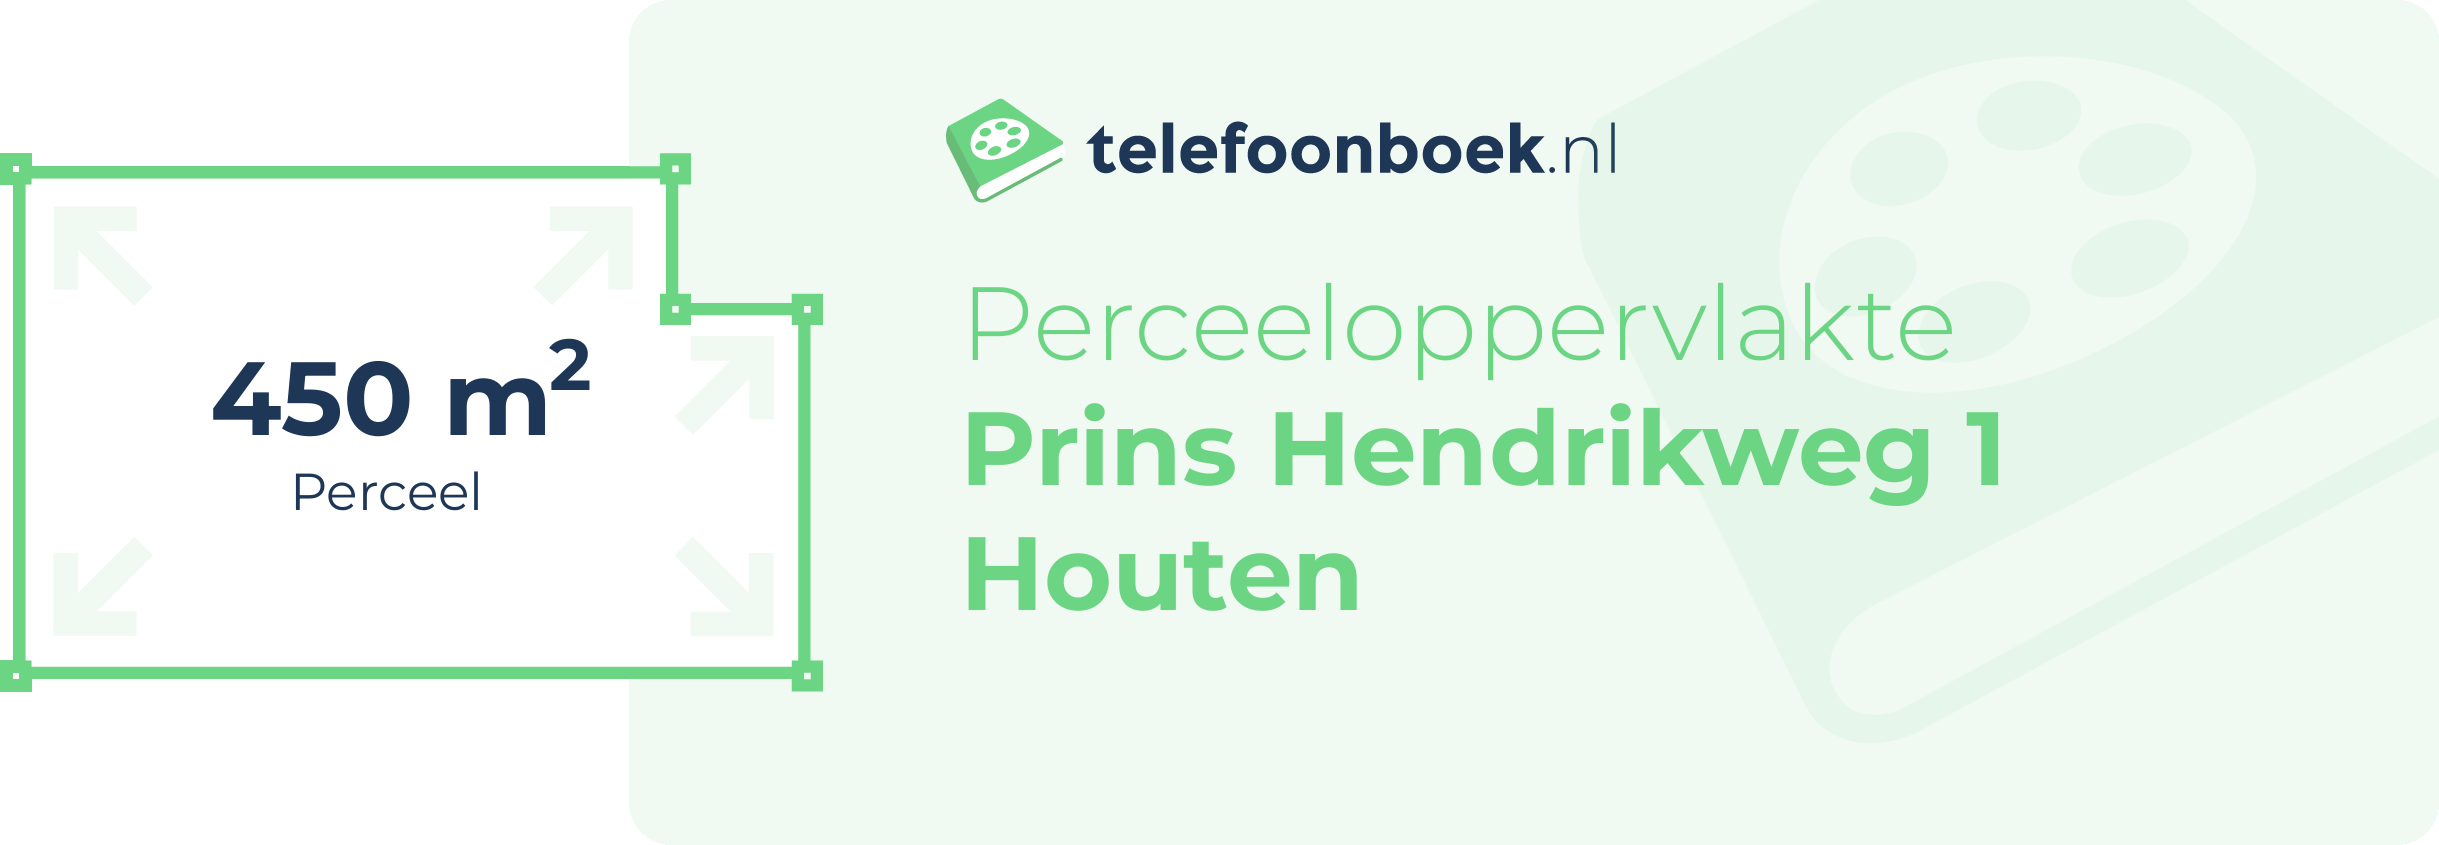 Perceeloppervlakte Prins Hendrikweg 1 Houten